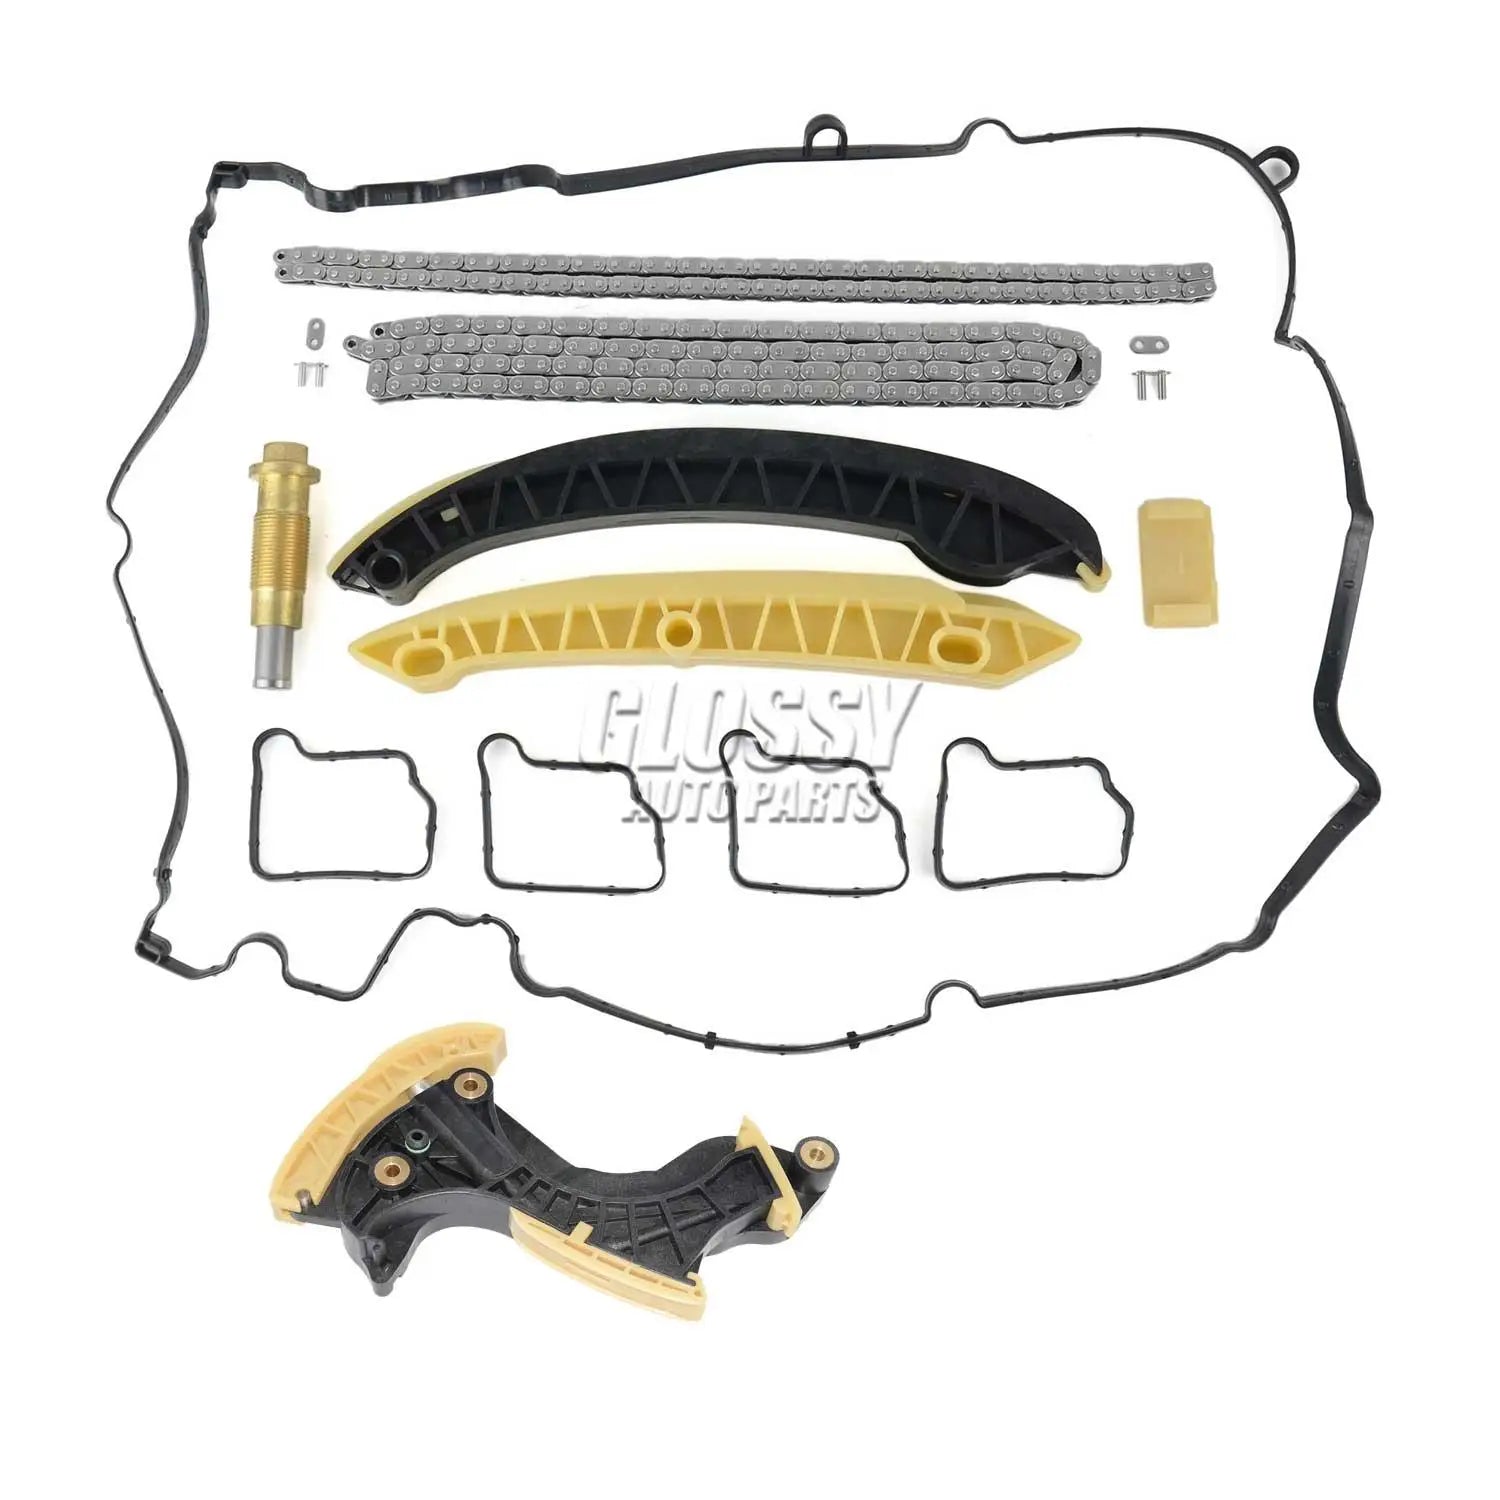 Mercedes Motor Timing Kettingspanner Kit, Compatibel met W203 W204 W211 R171